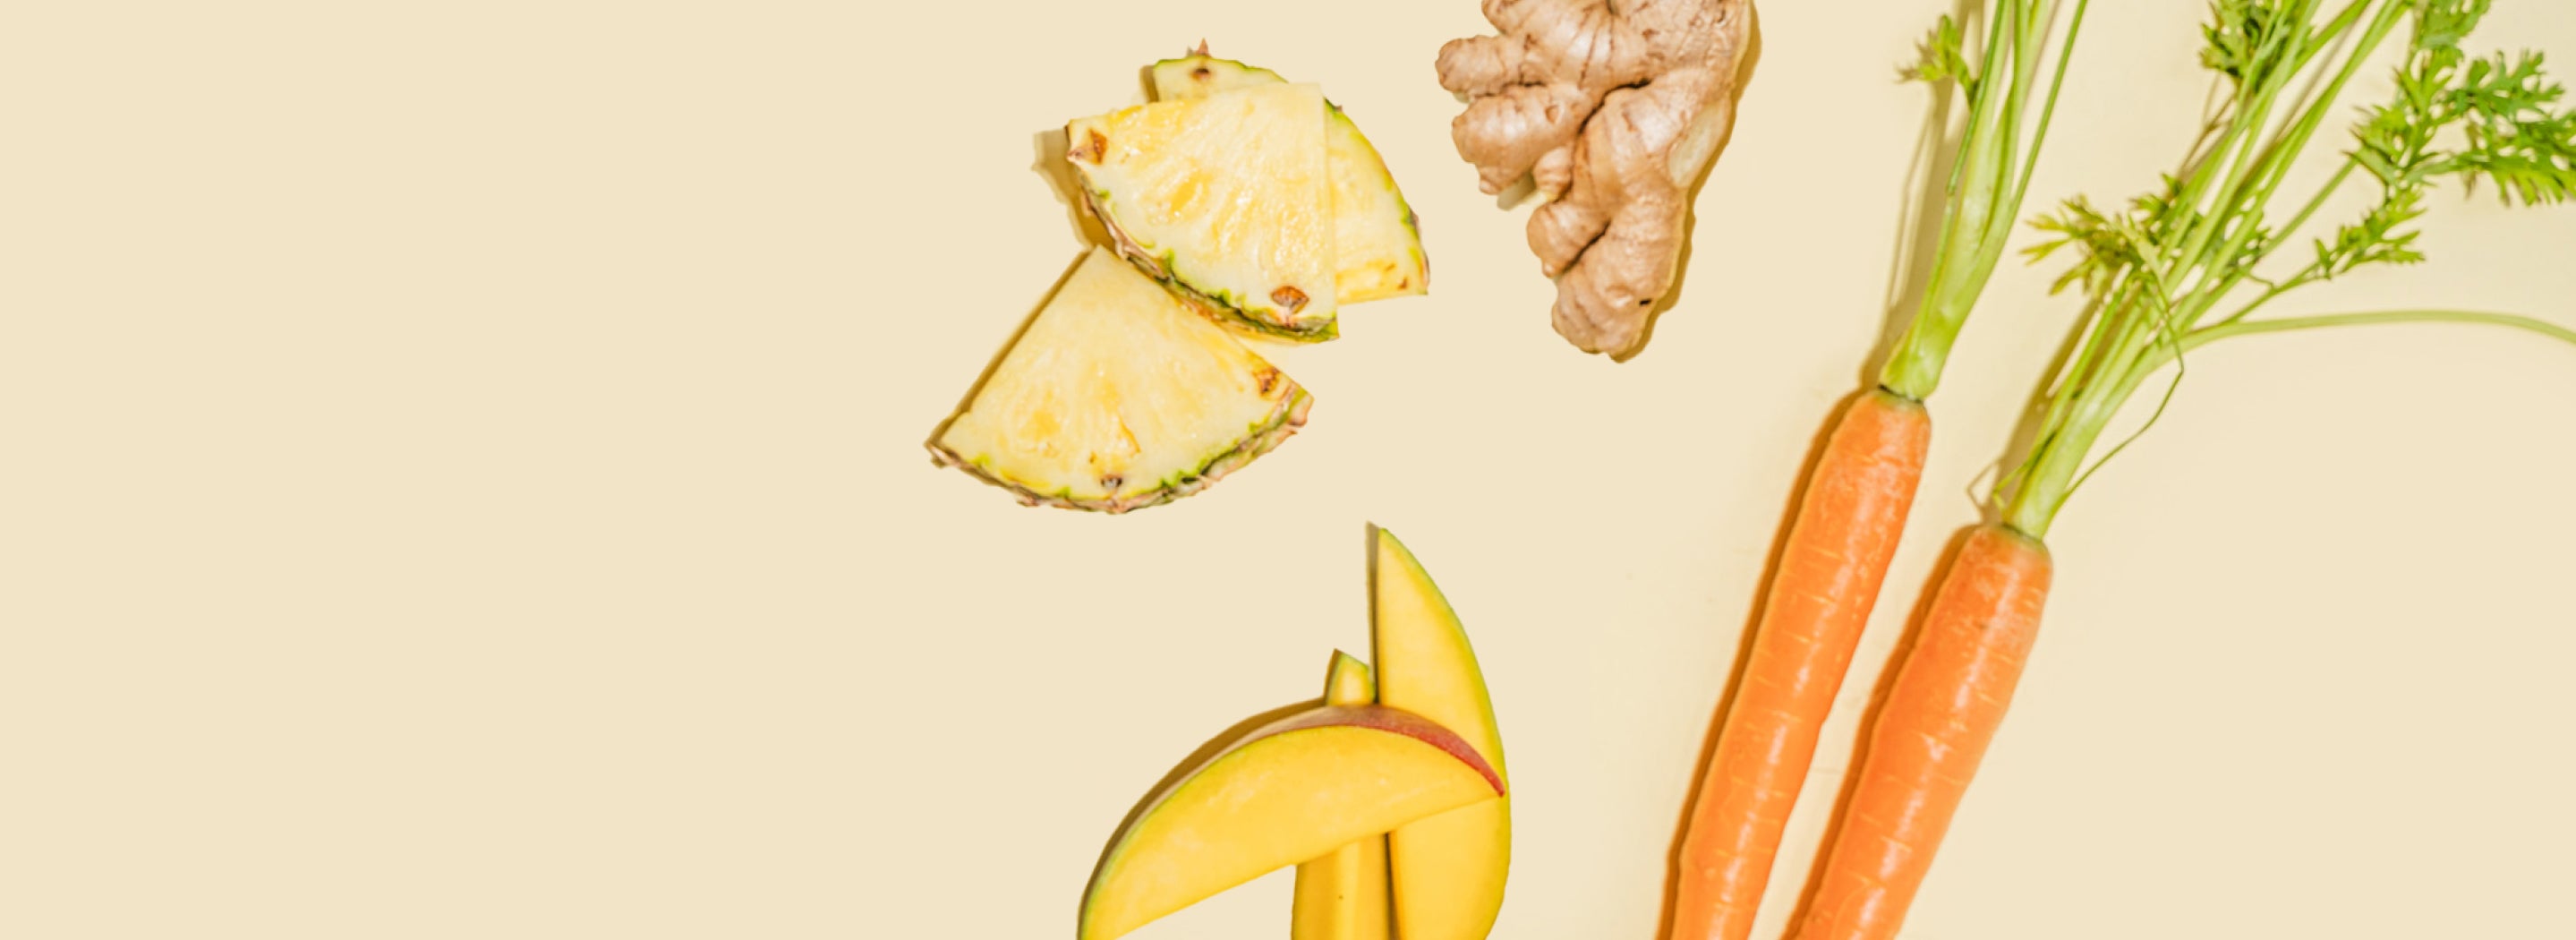 Layout von Ananas, Ingwer, Mango und Karotten